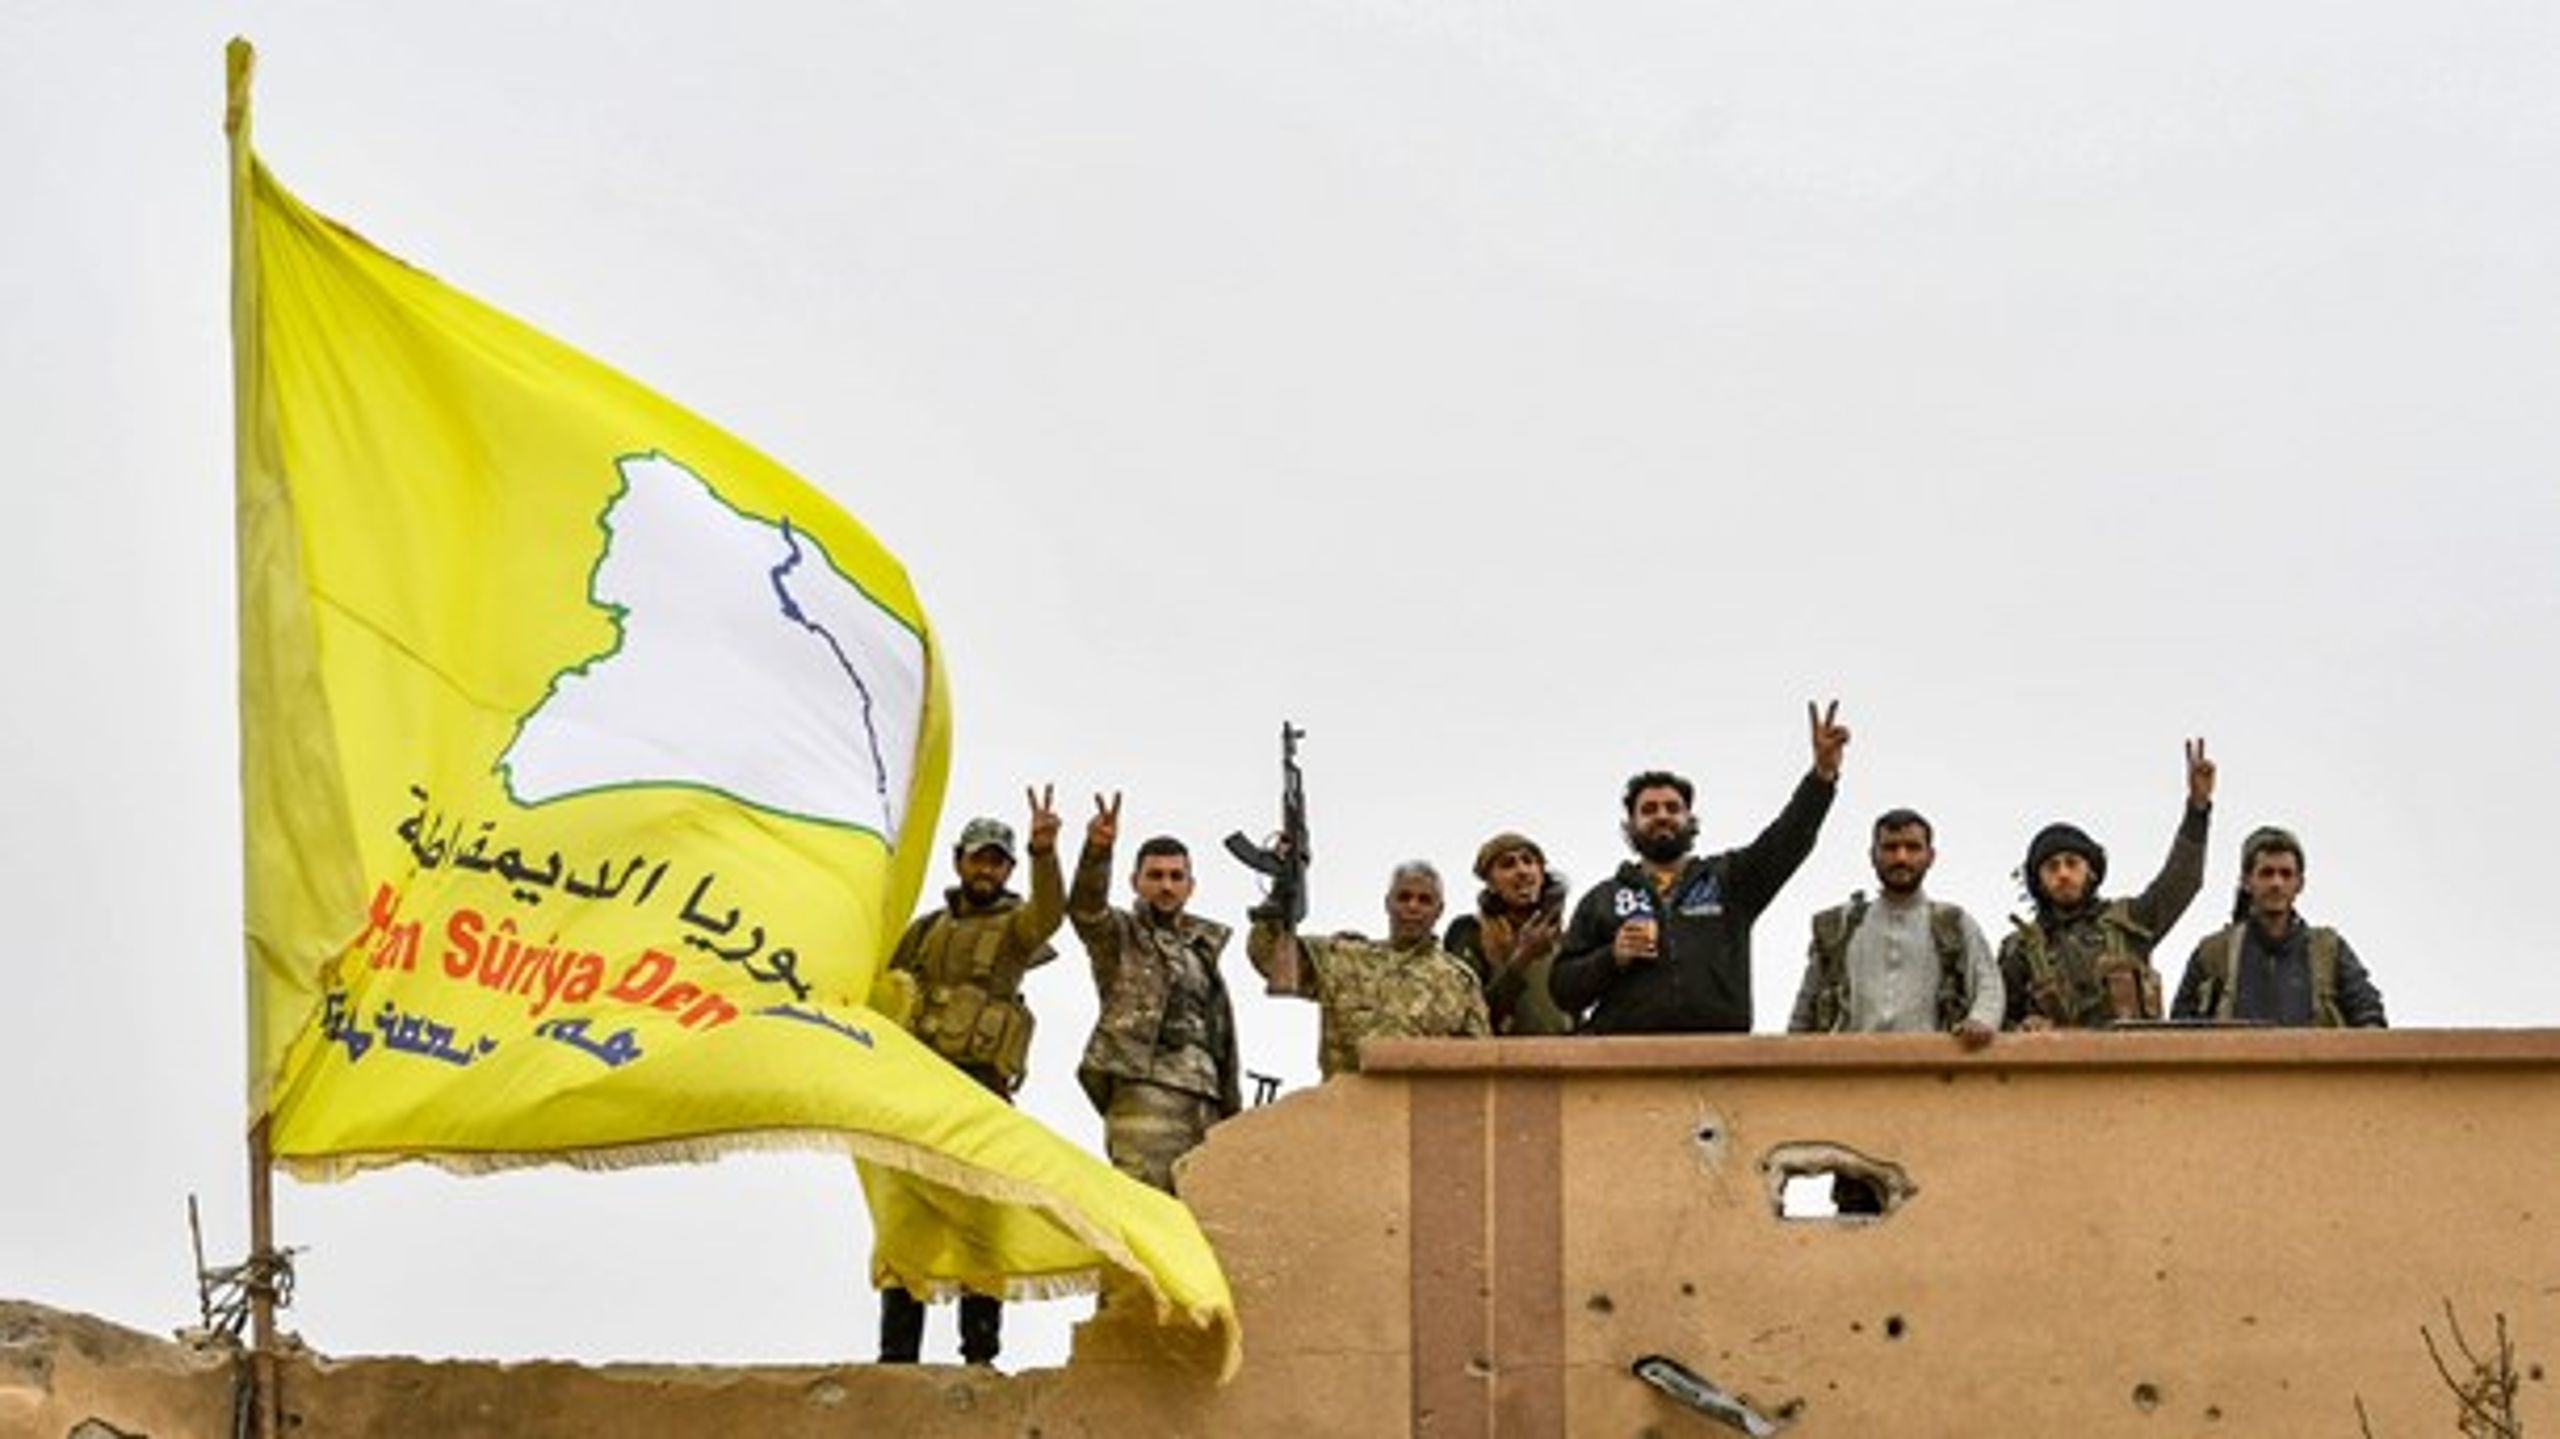 De kurdiske selvforsvarsstyrker har været centrale i bekæmpelsen af Islamisk Stat, skriver Søren Søndergaard (EL).